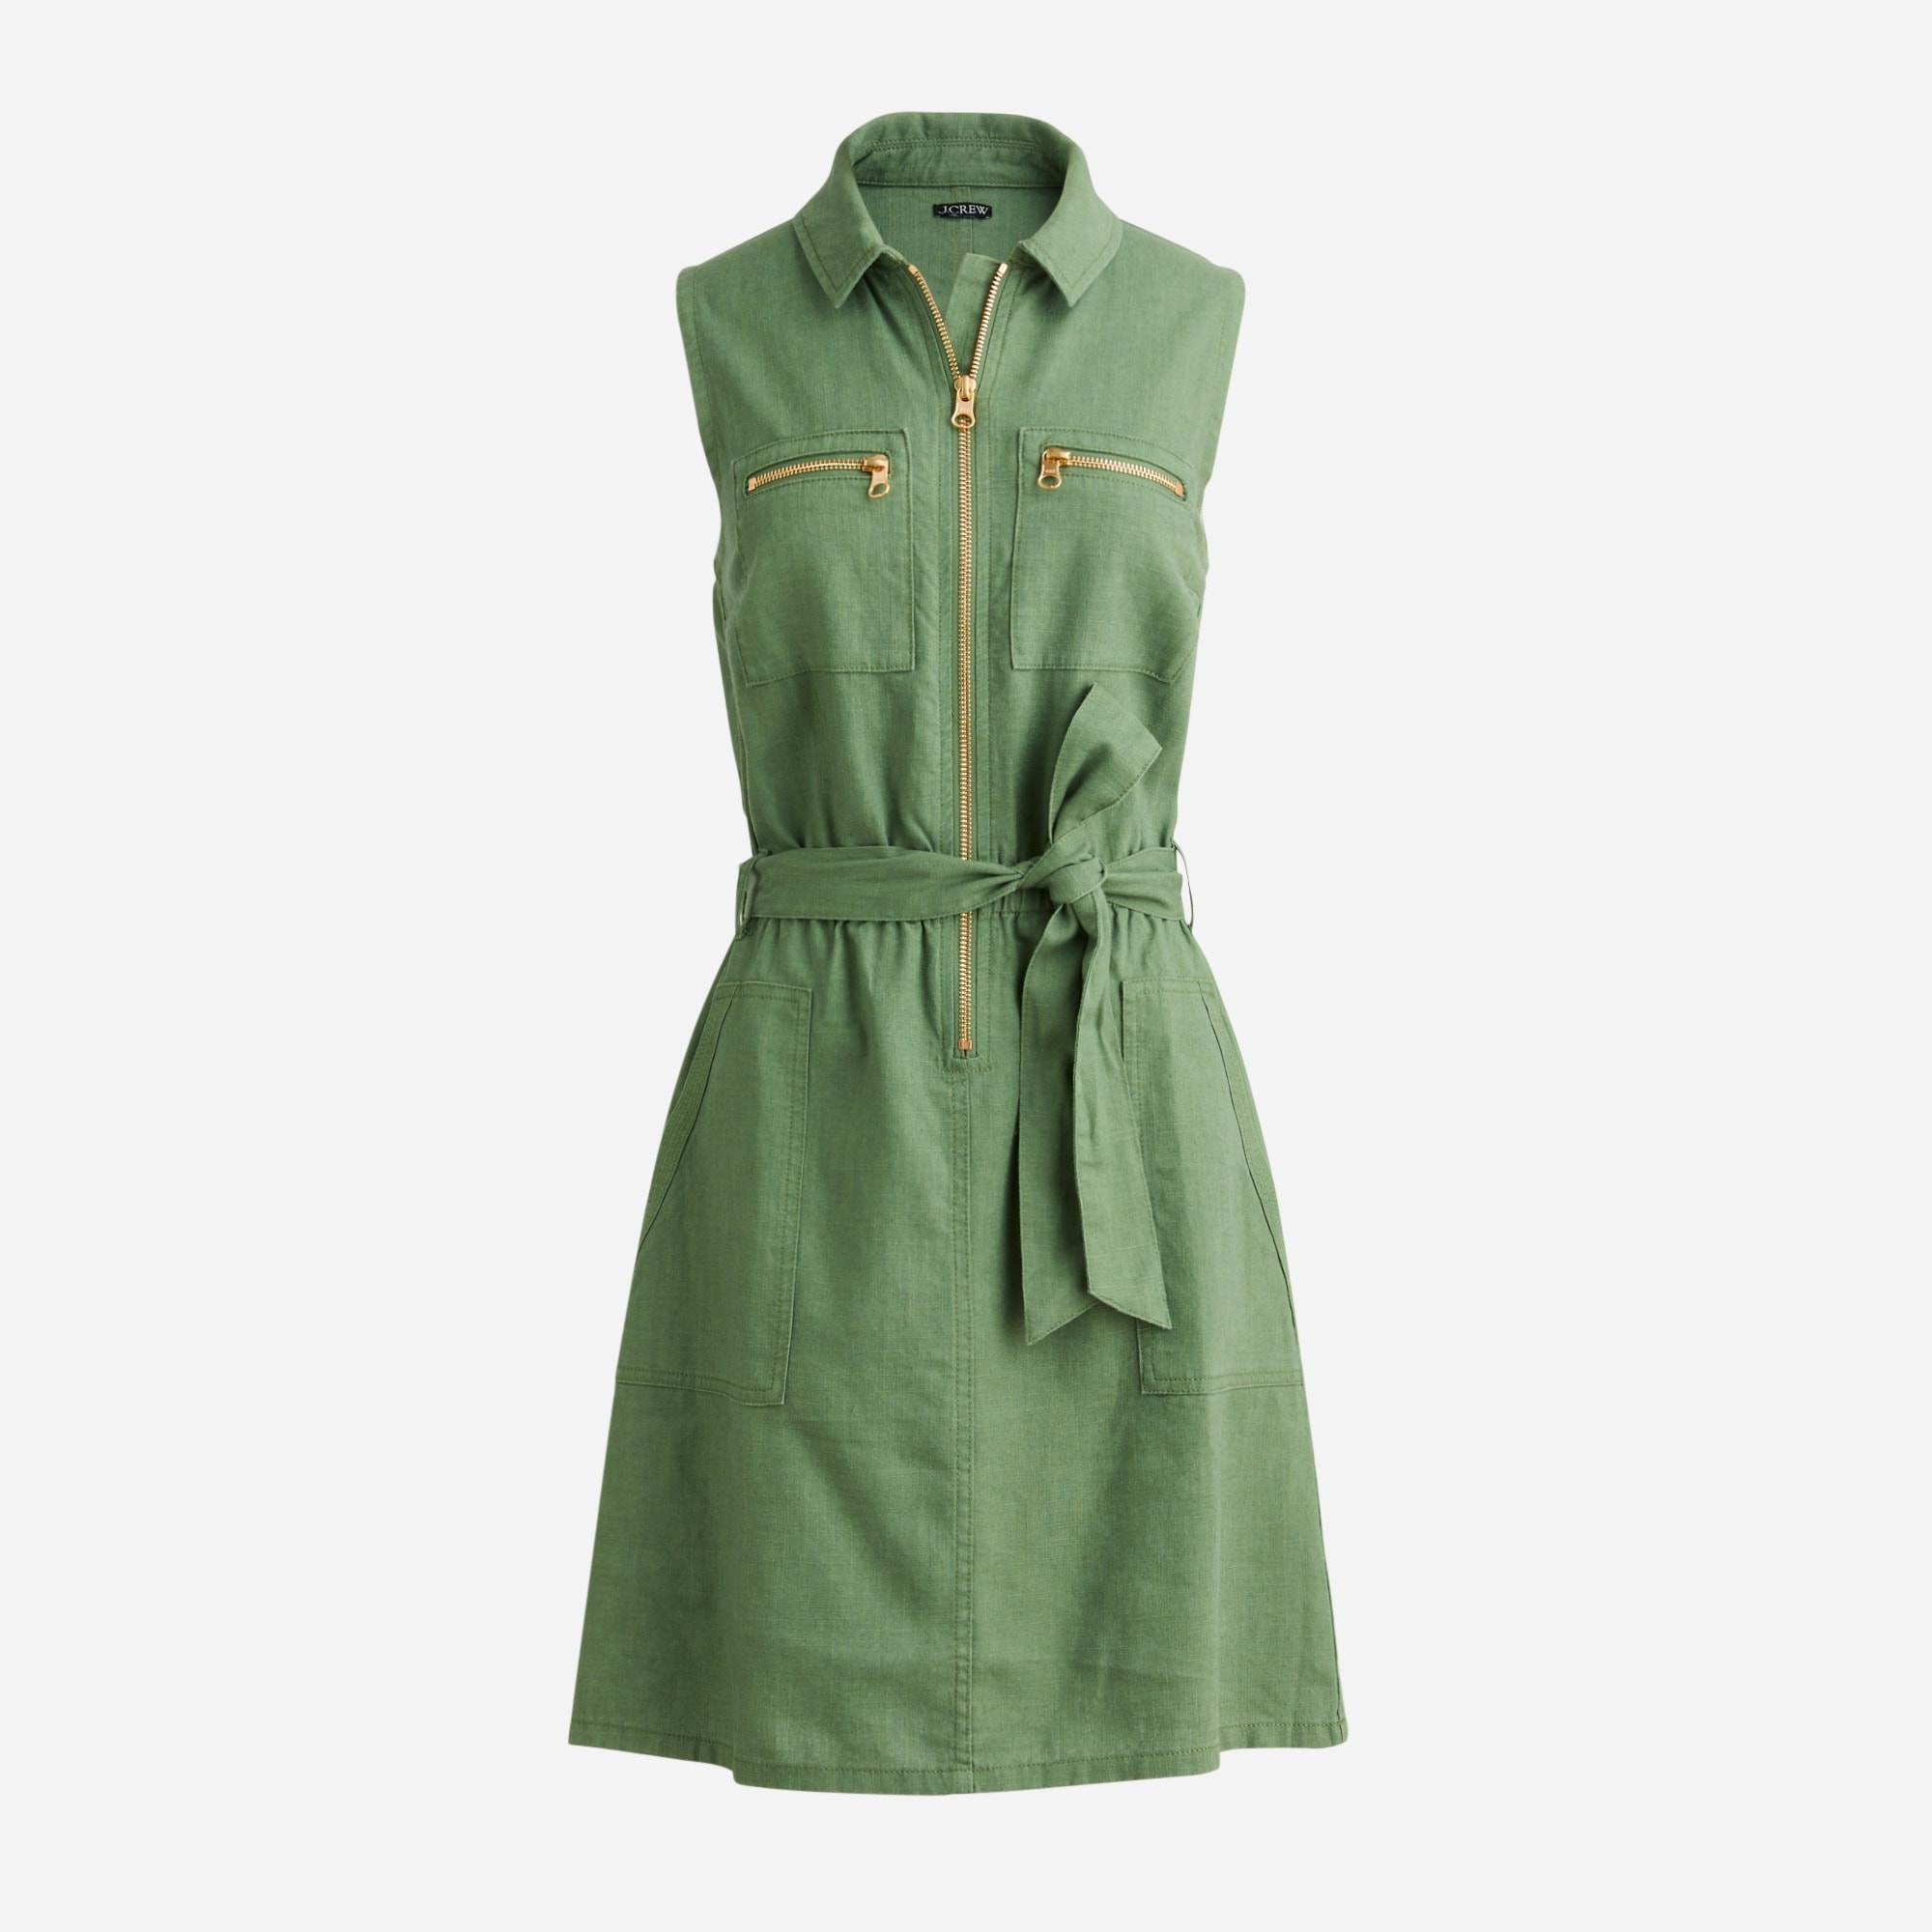  Zip-front linen-blend dress